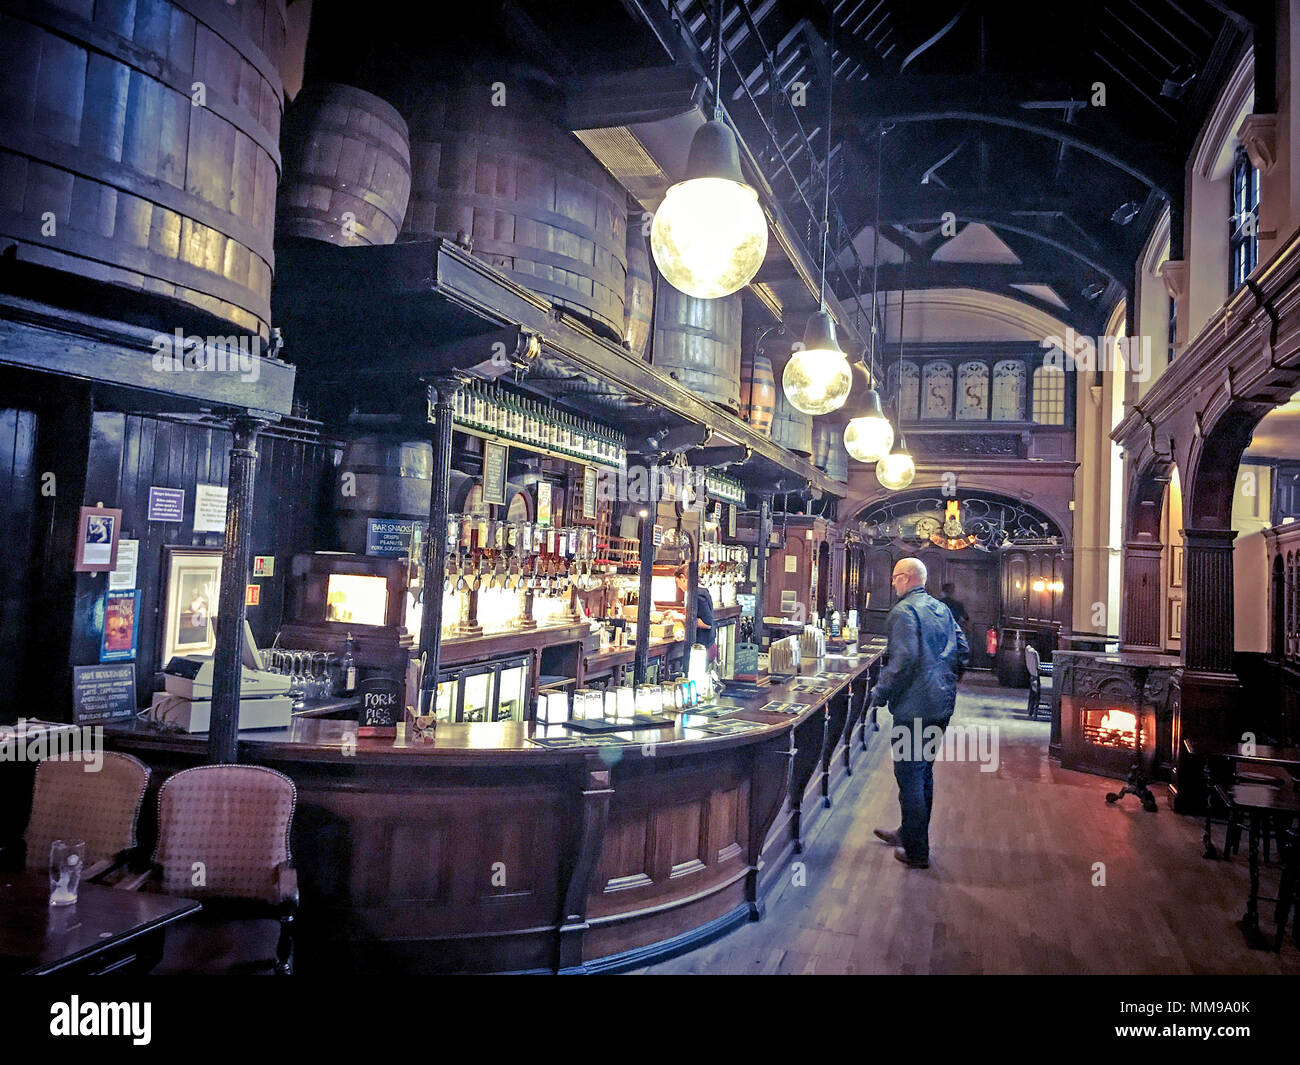 Citte di Yorke Pub, Chancelry Lane, Holborn, Londra, Inghilterra, Regno Unito Foto Stock